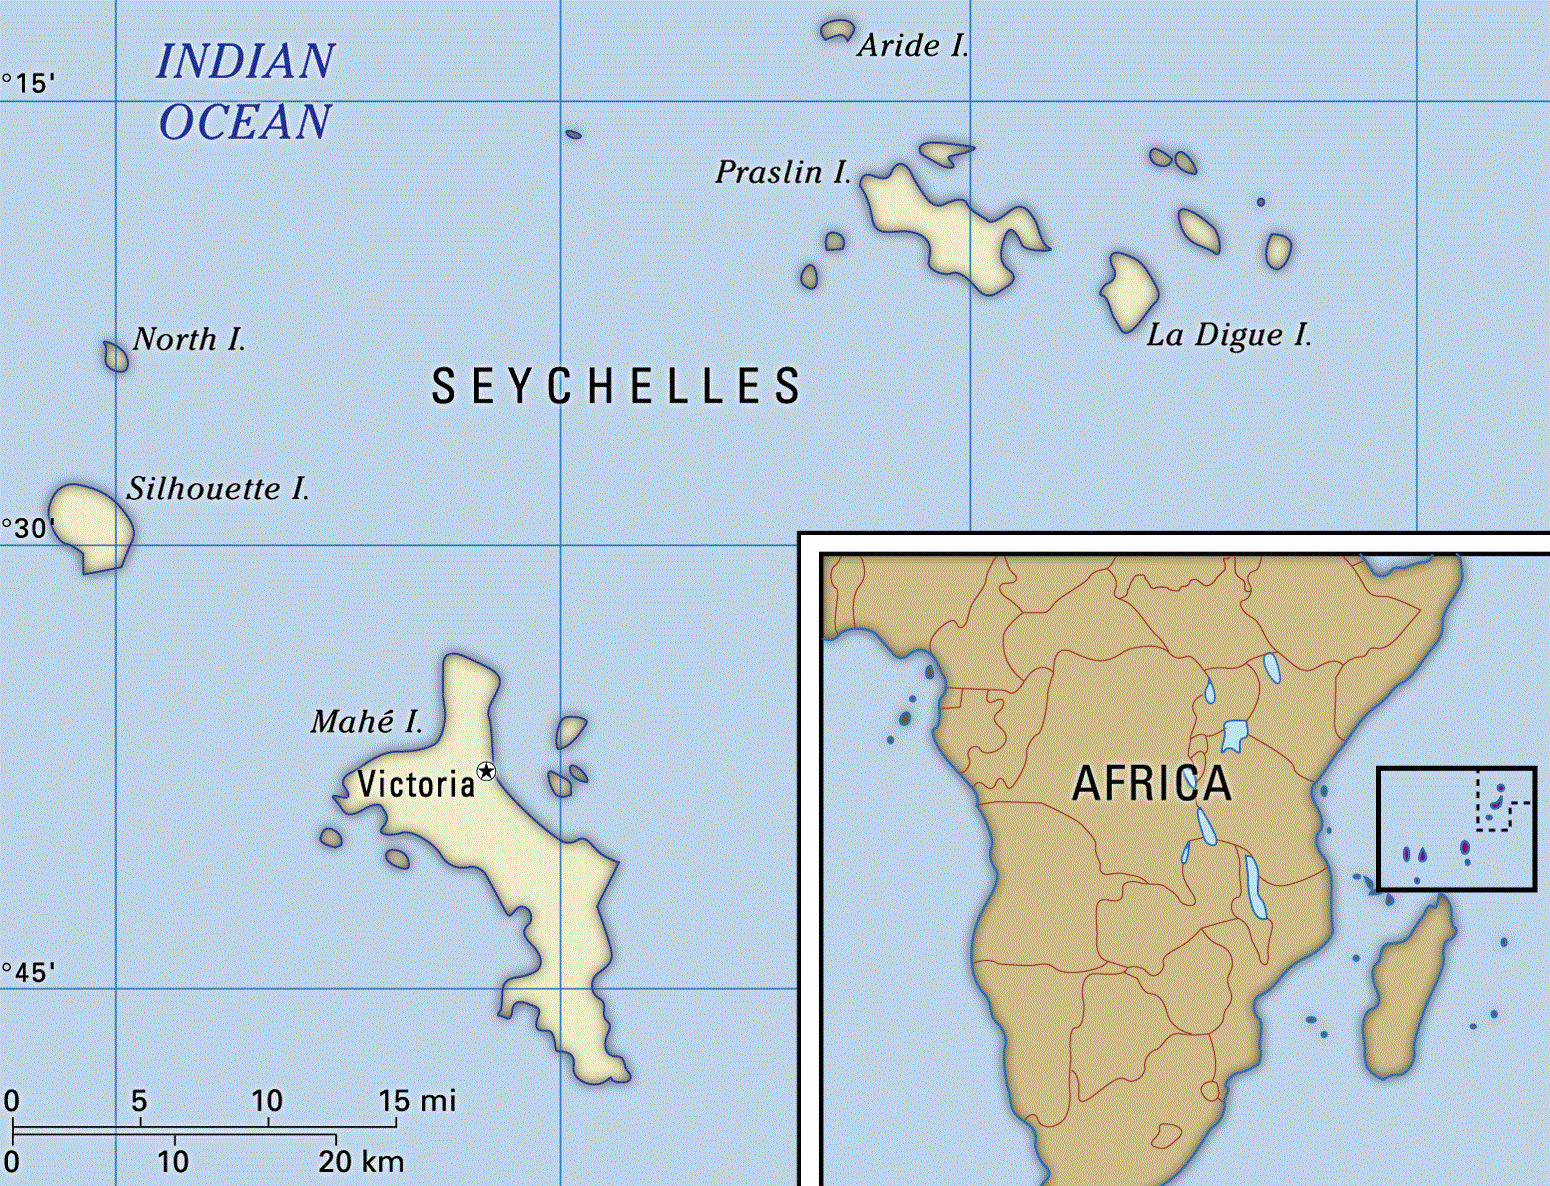 Сейшельские острова - архипелаг в Индийском океане